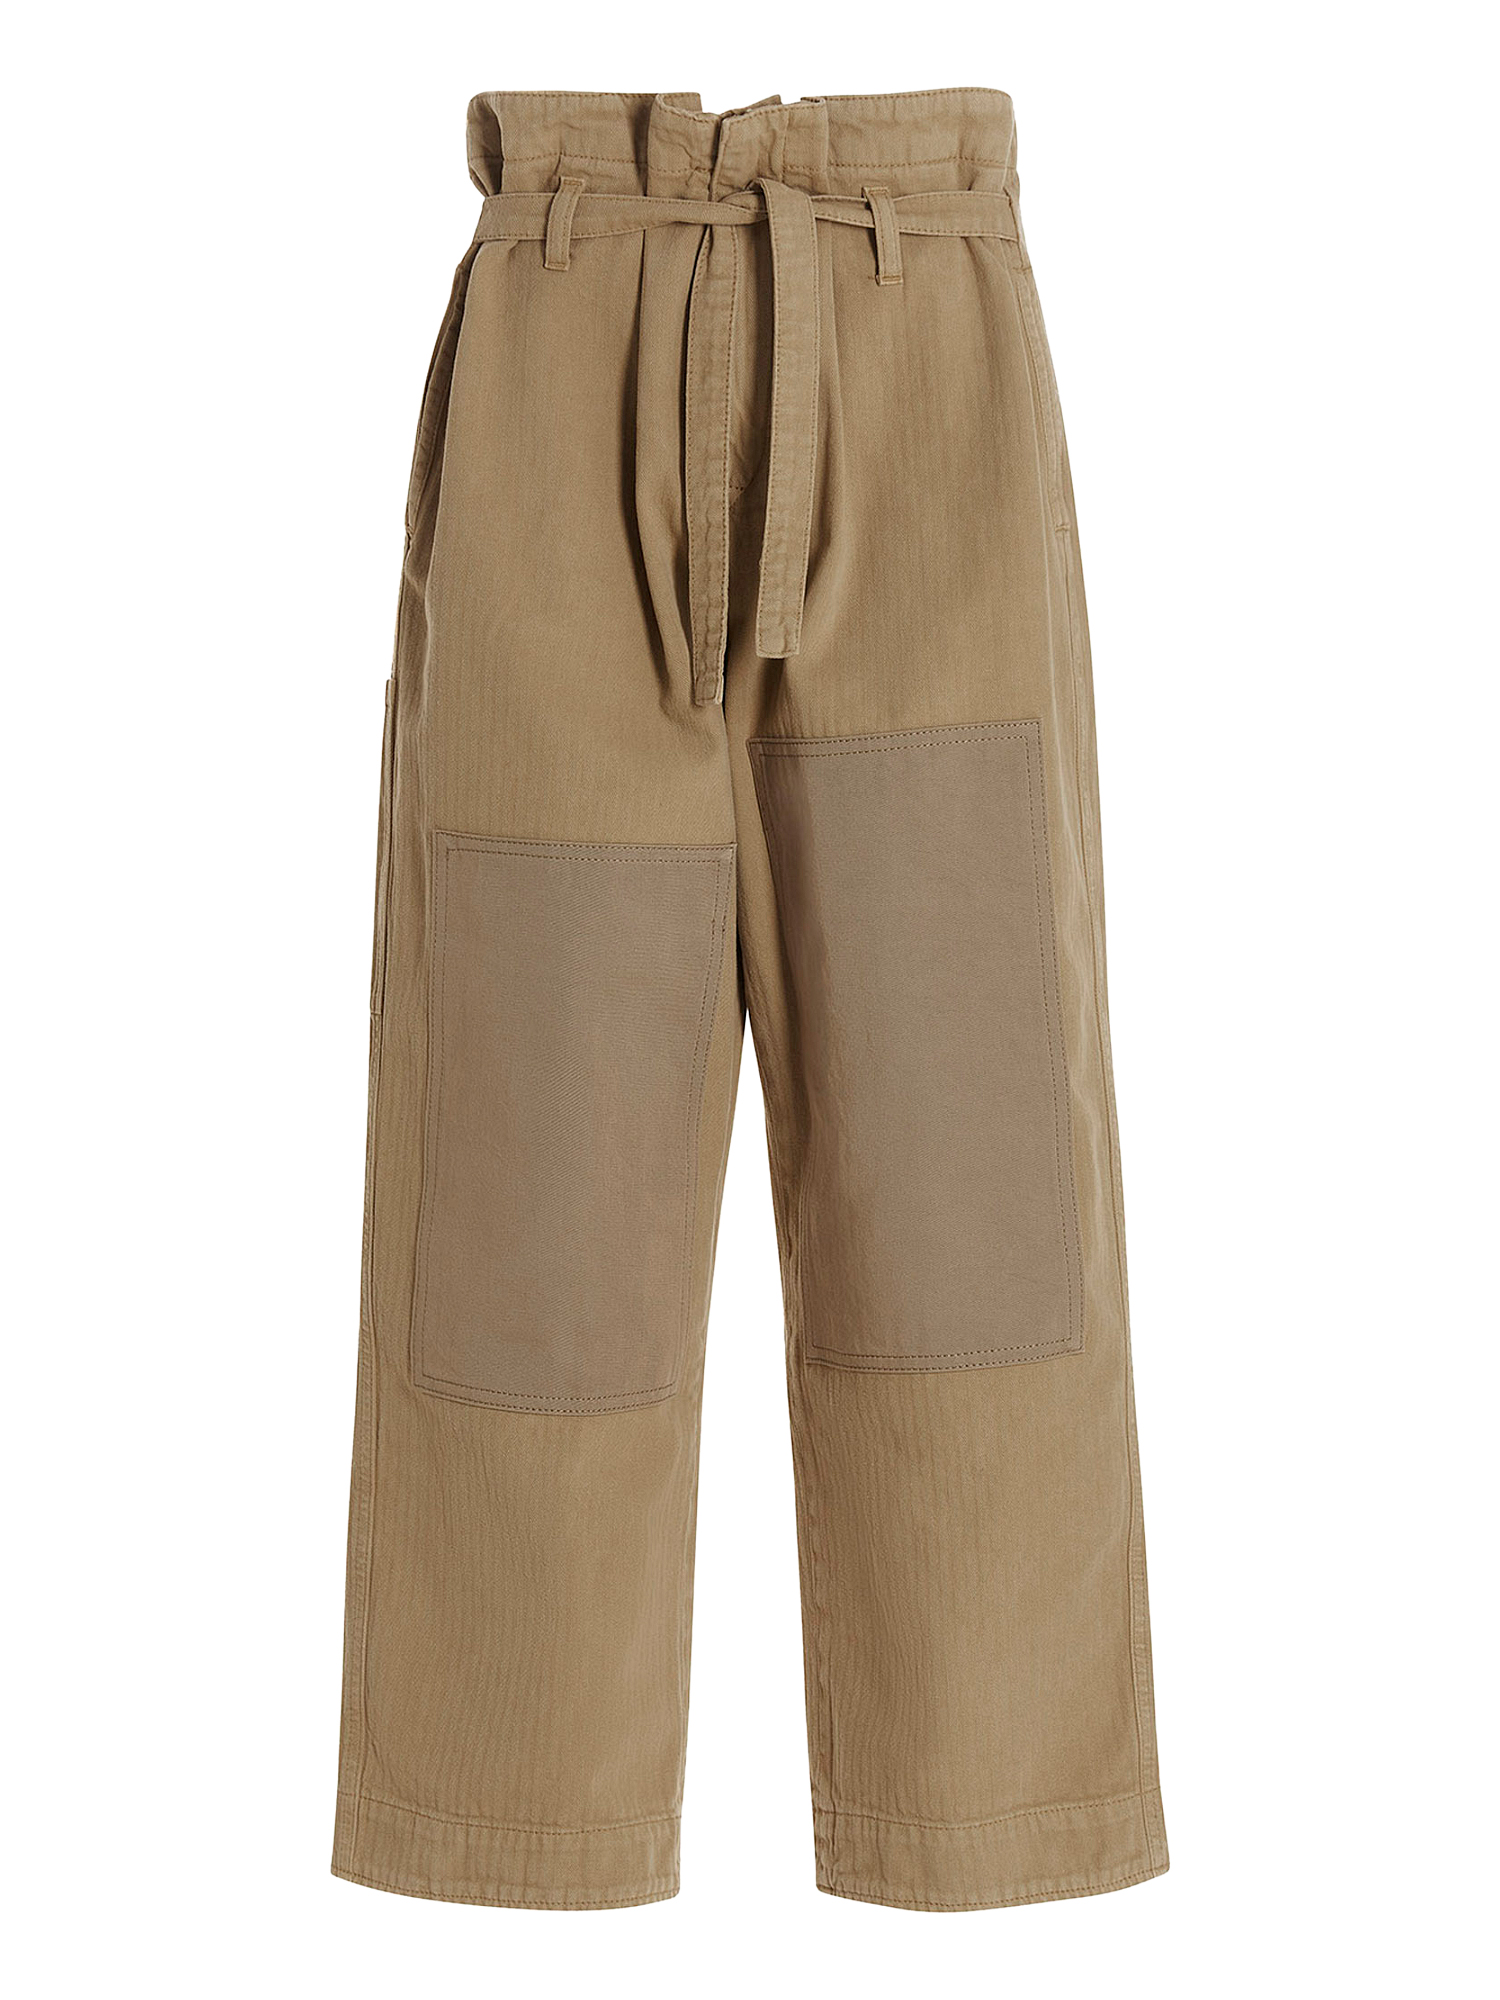 Pantalons Pour Femme - Etro - En Cotton Beige - Taille:  -